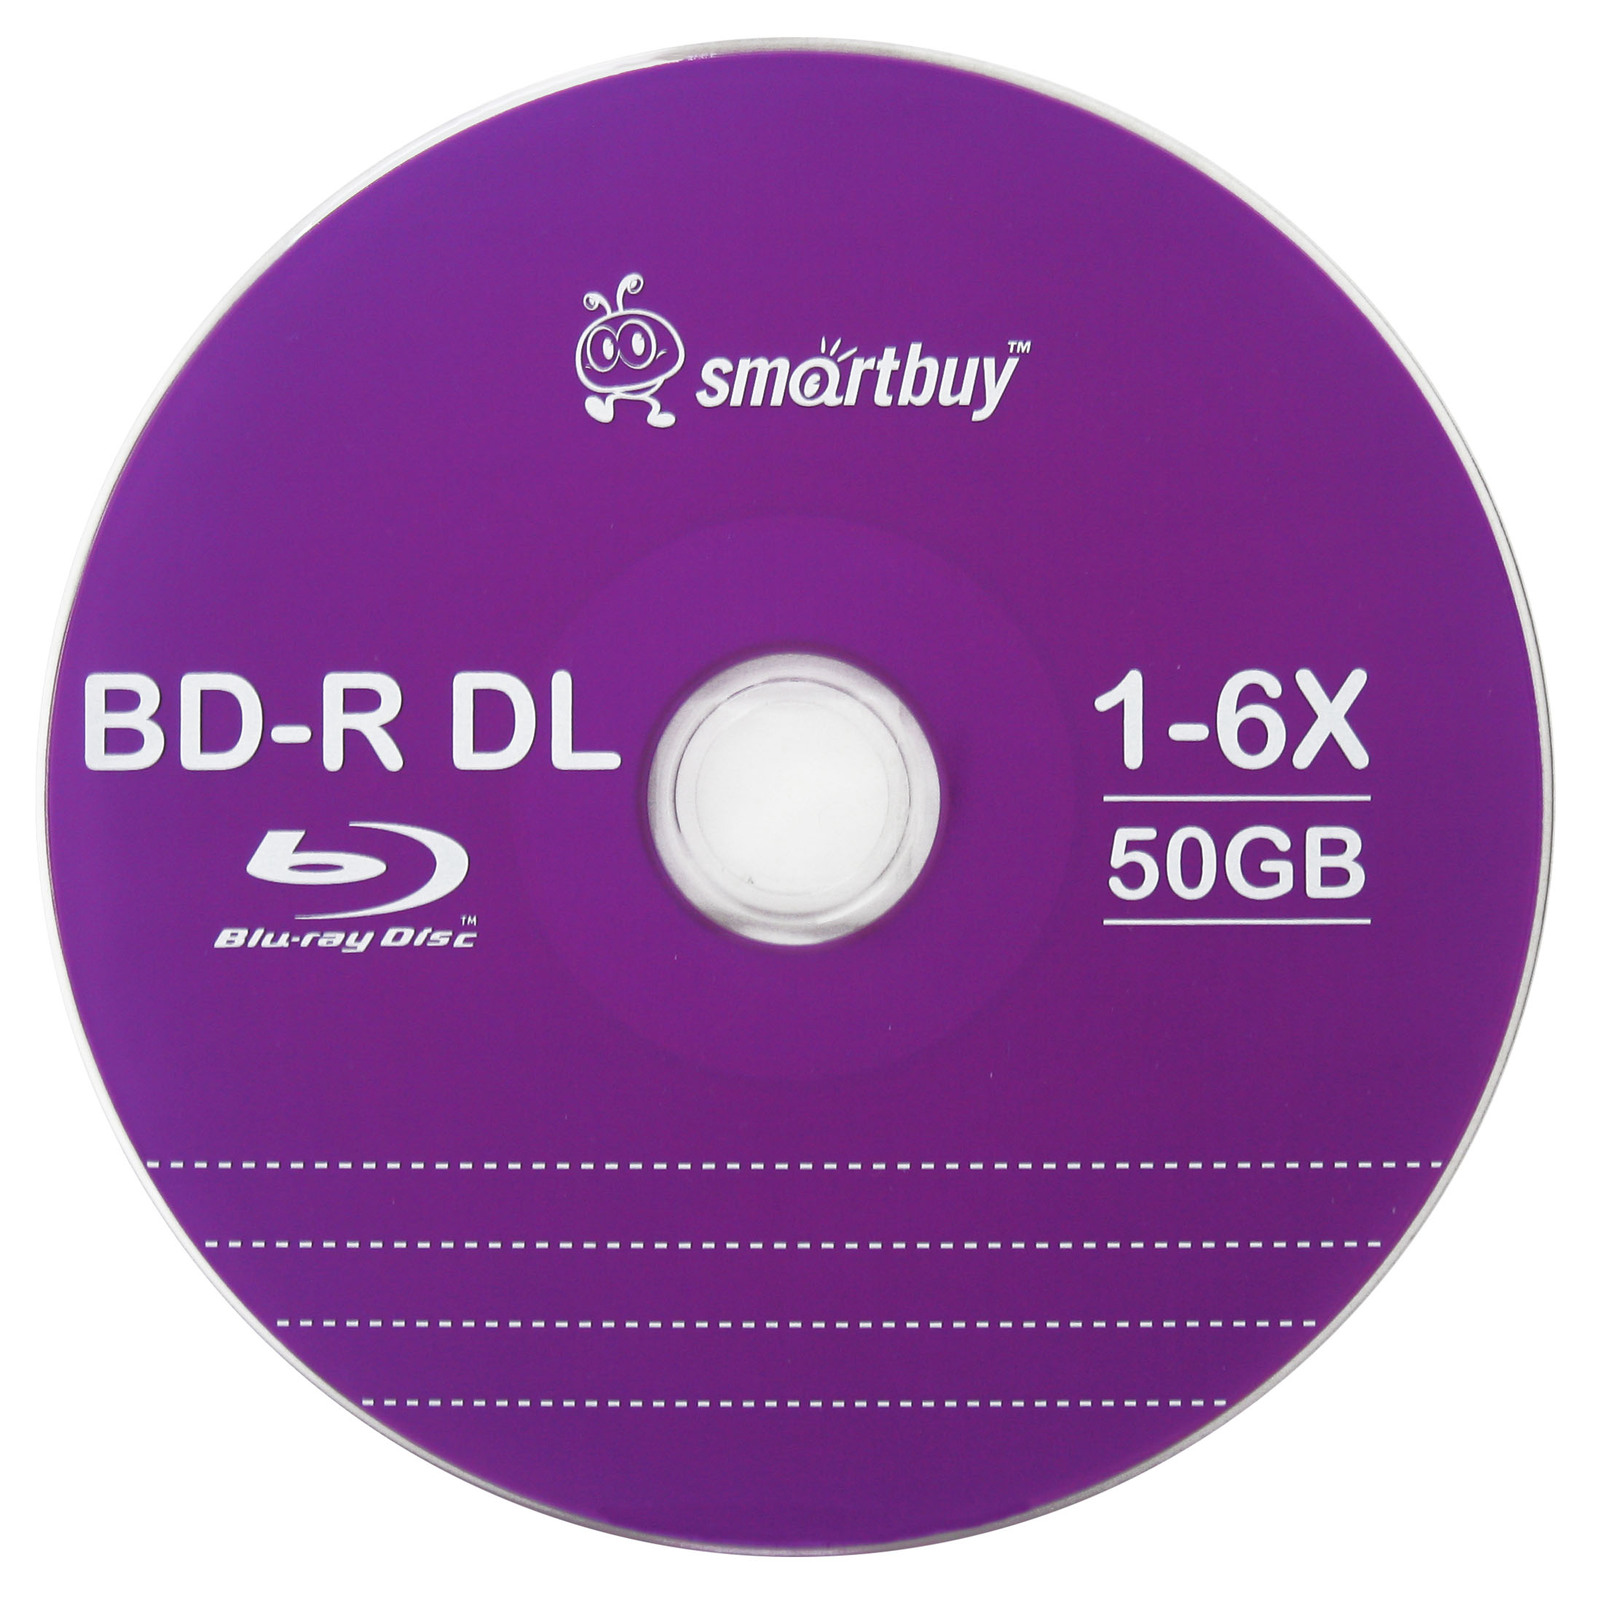 Cd 25 6. Bd-r DL 50gb. Blu ray диск 50 ГБ. Диск Blu ray cd25 GB. Blu-ray (Blu-ray Disc).